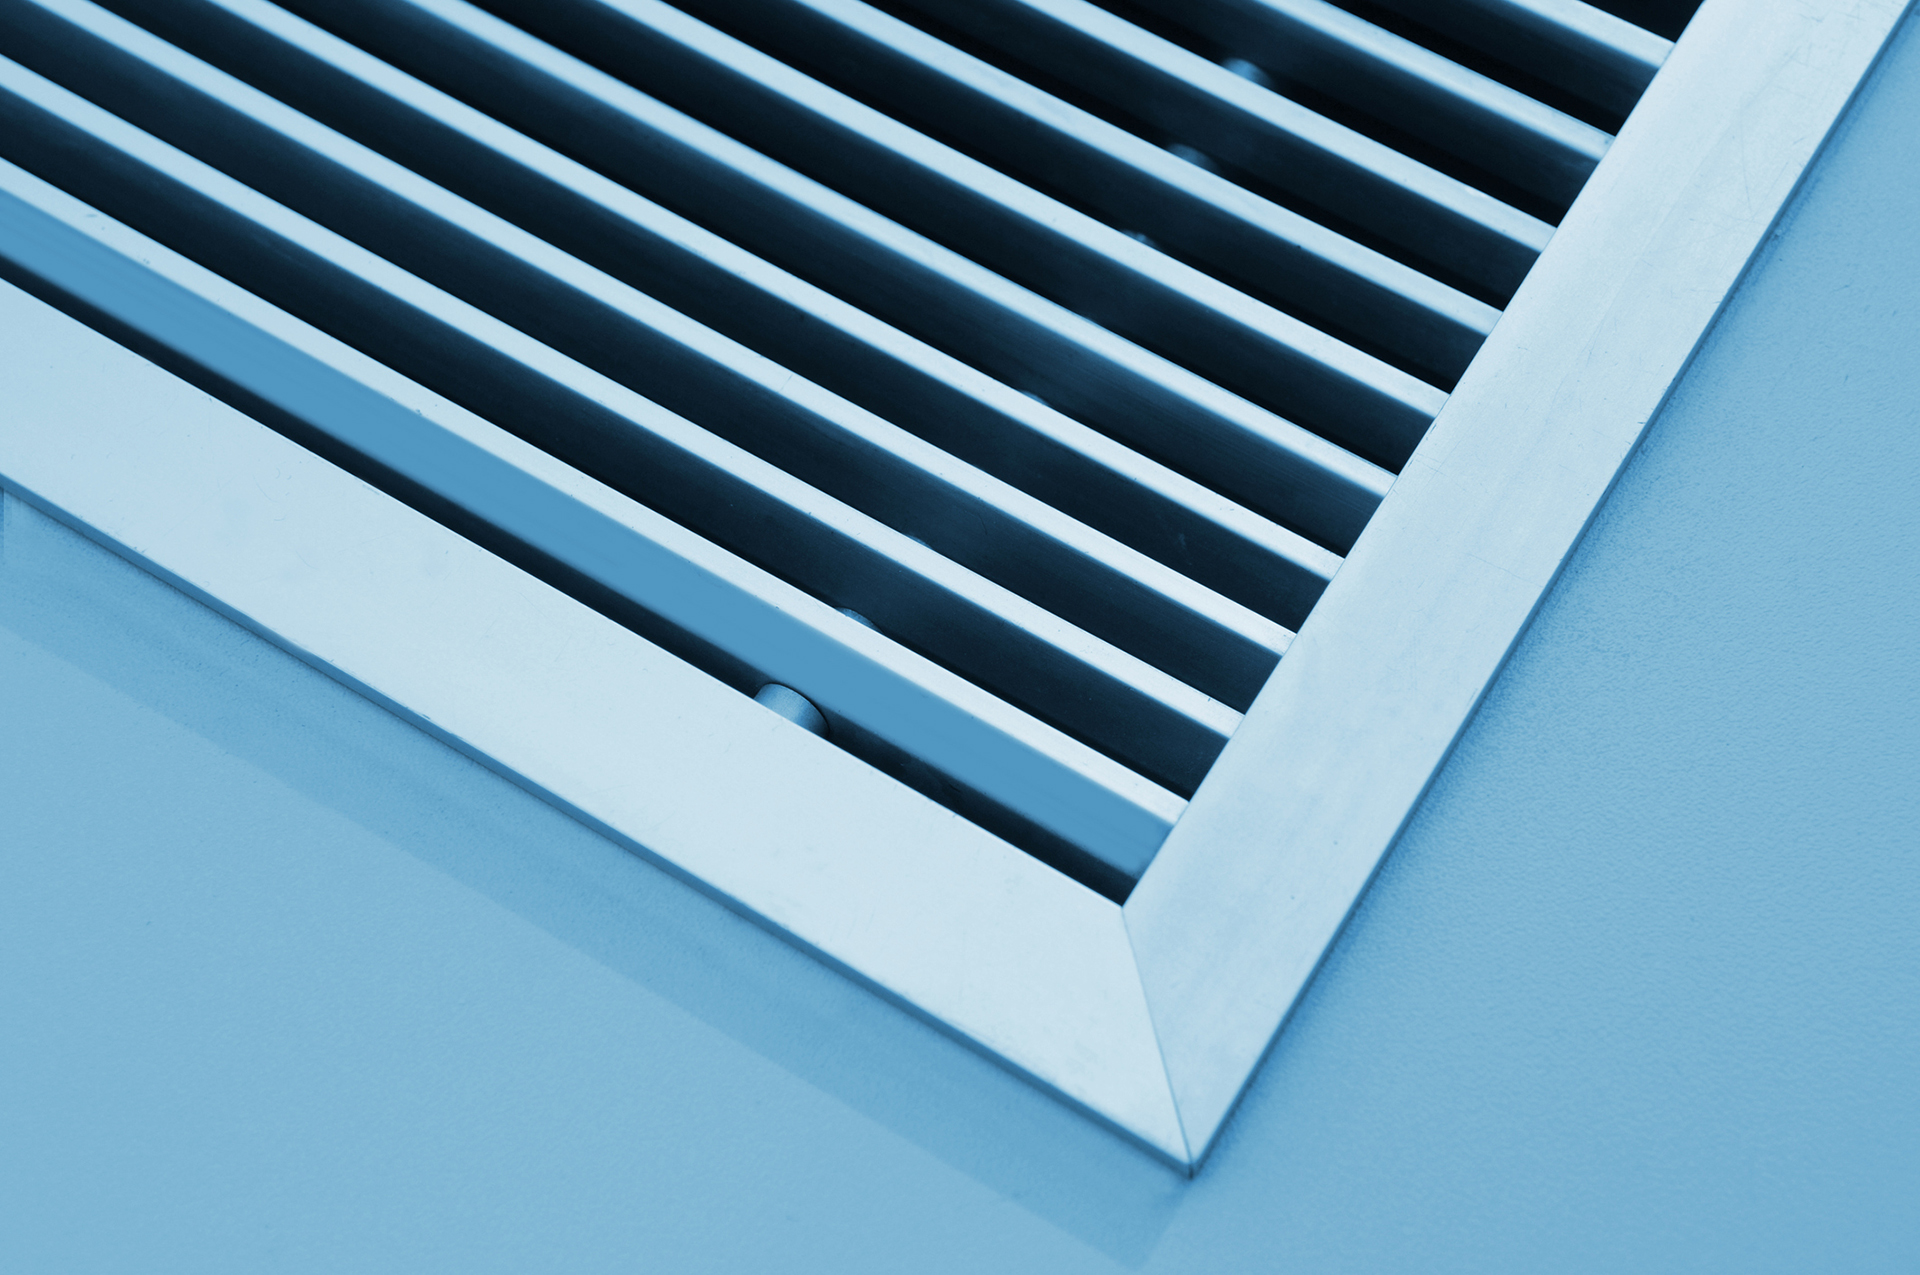 close-up of a vent